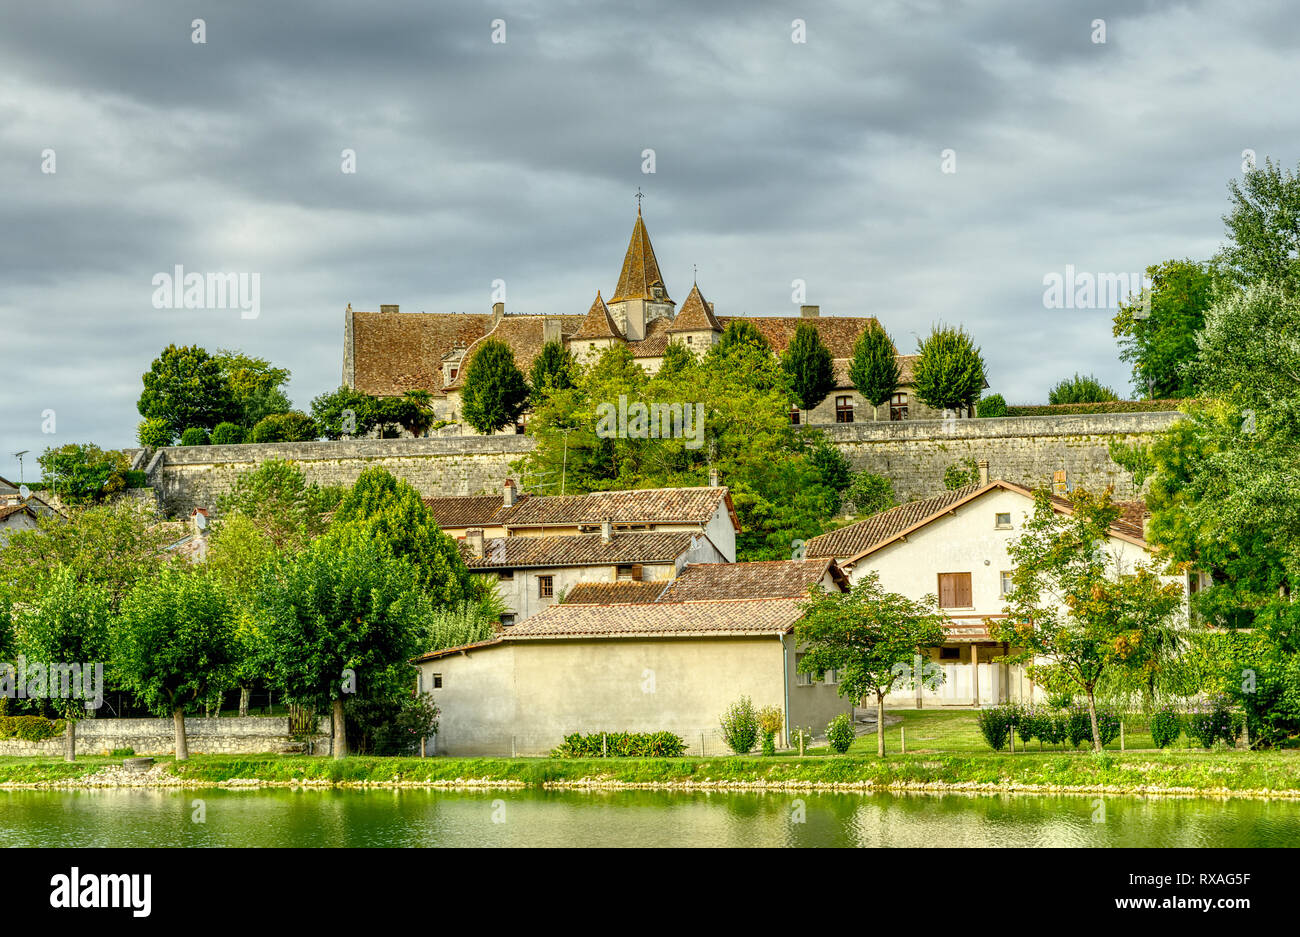 Chateau Ducal, Lauzun, Lot-et-Garonne Department, New Aquitaine, France Stock Photo